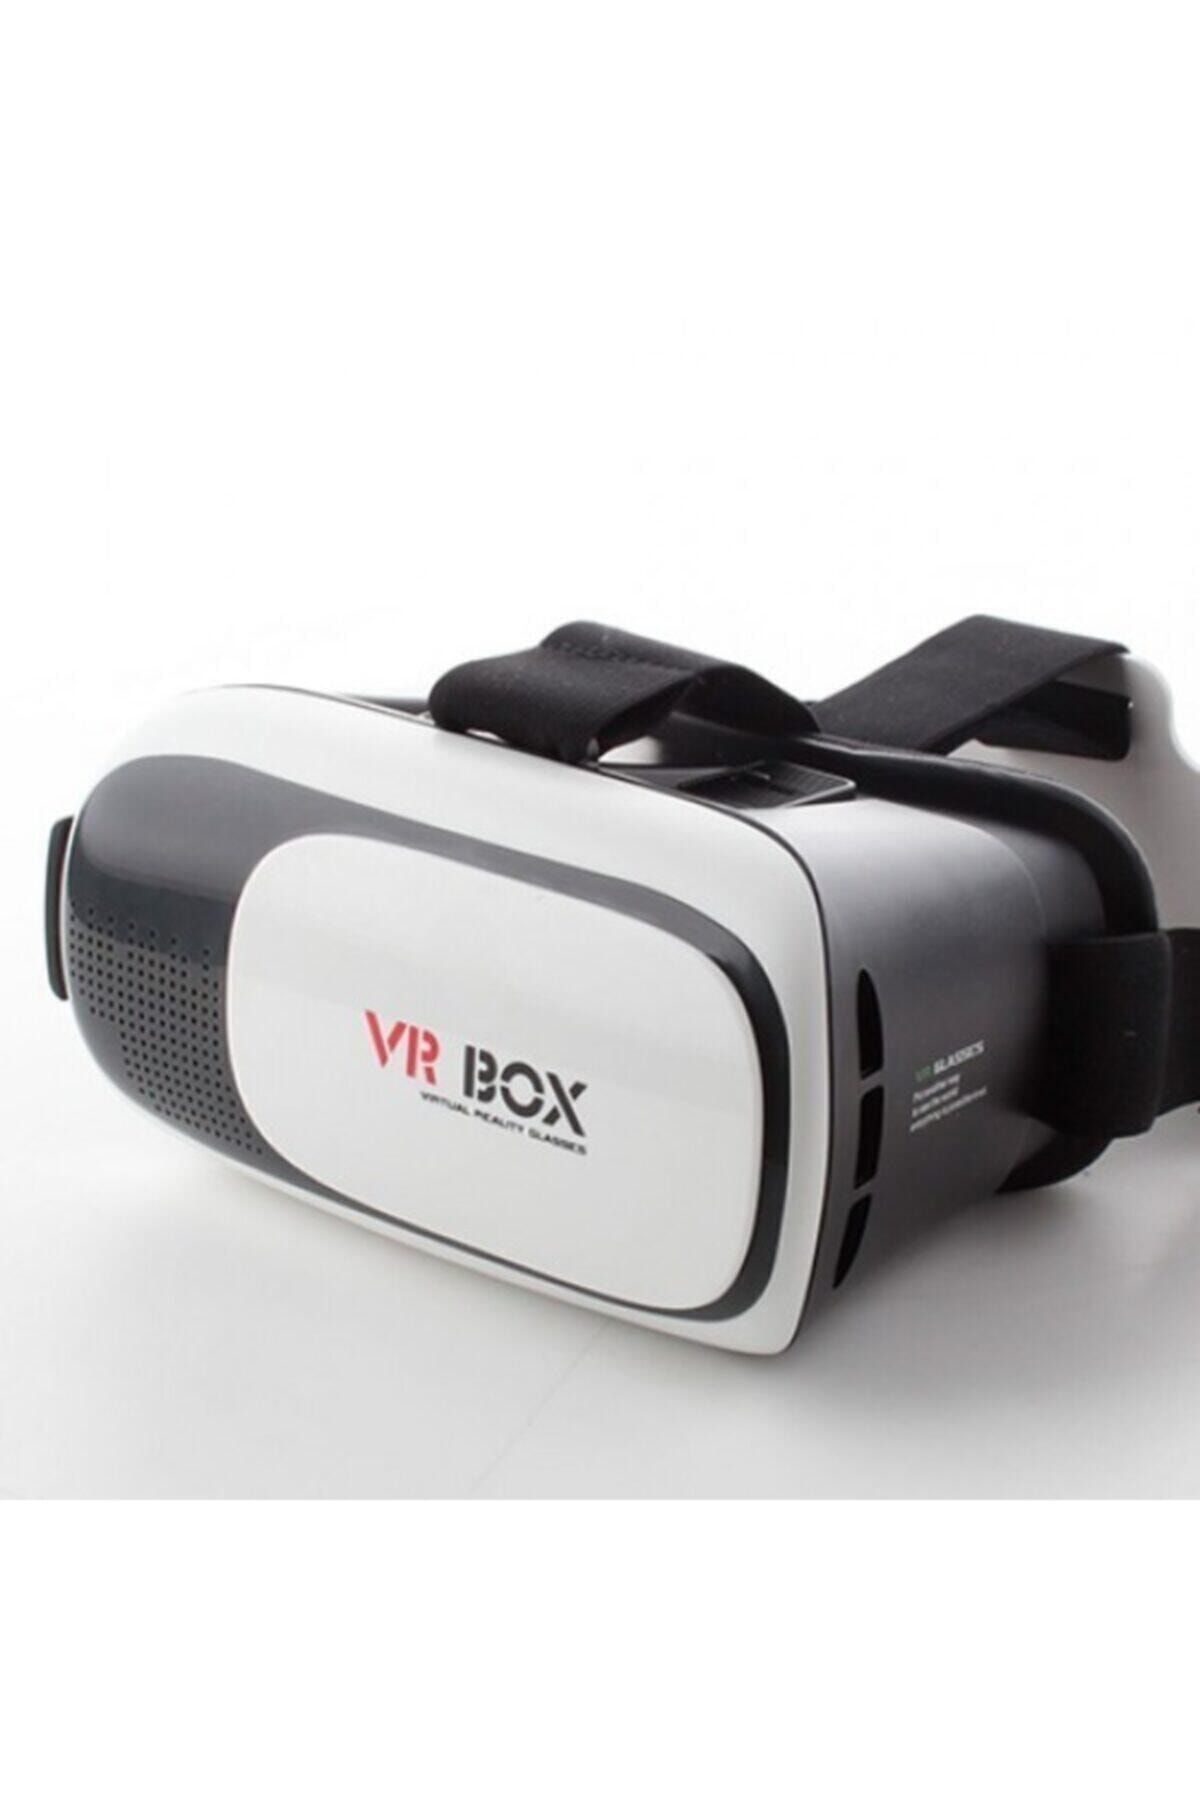 Vr Box Vr-box 3d Sanal Gerçeklik Gözlüğü 2.0